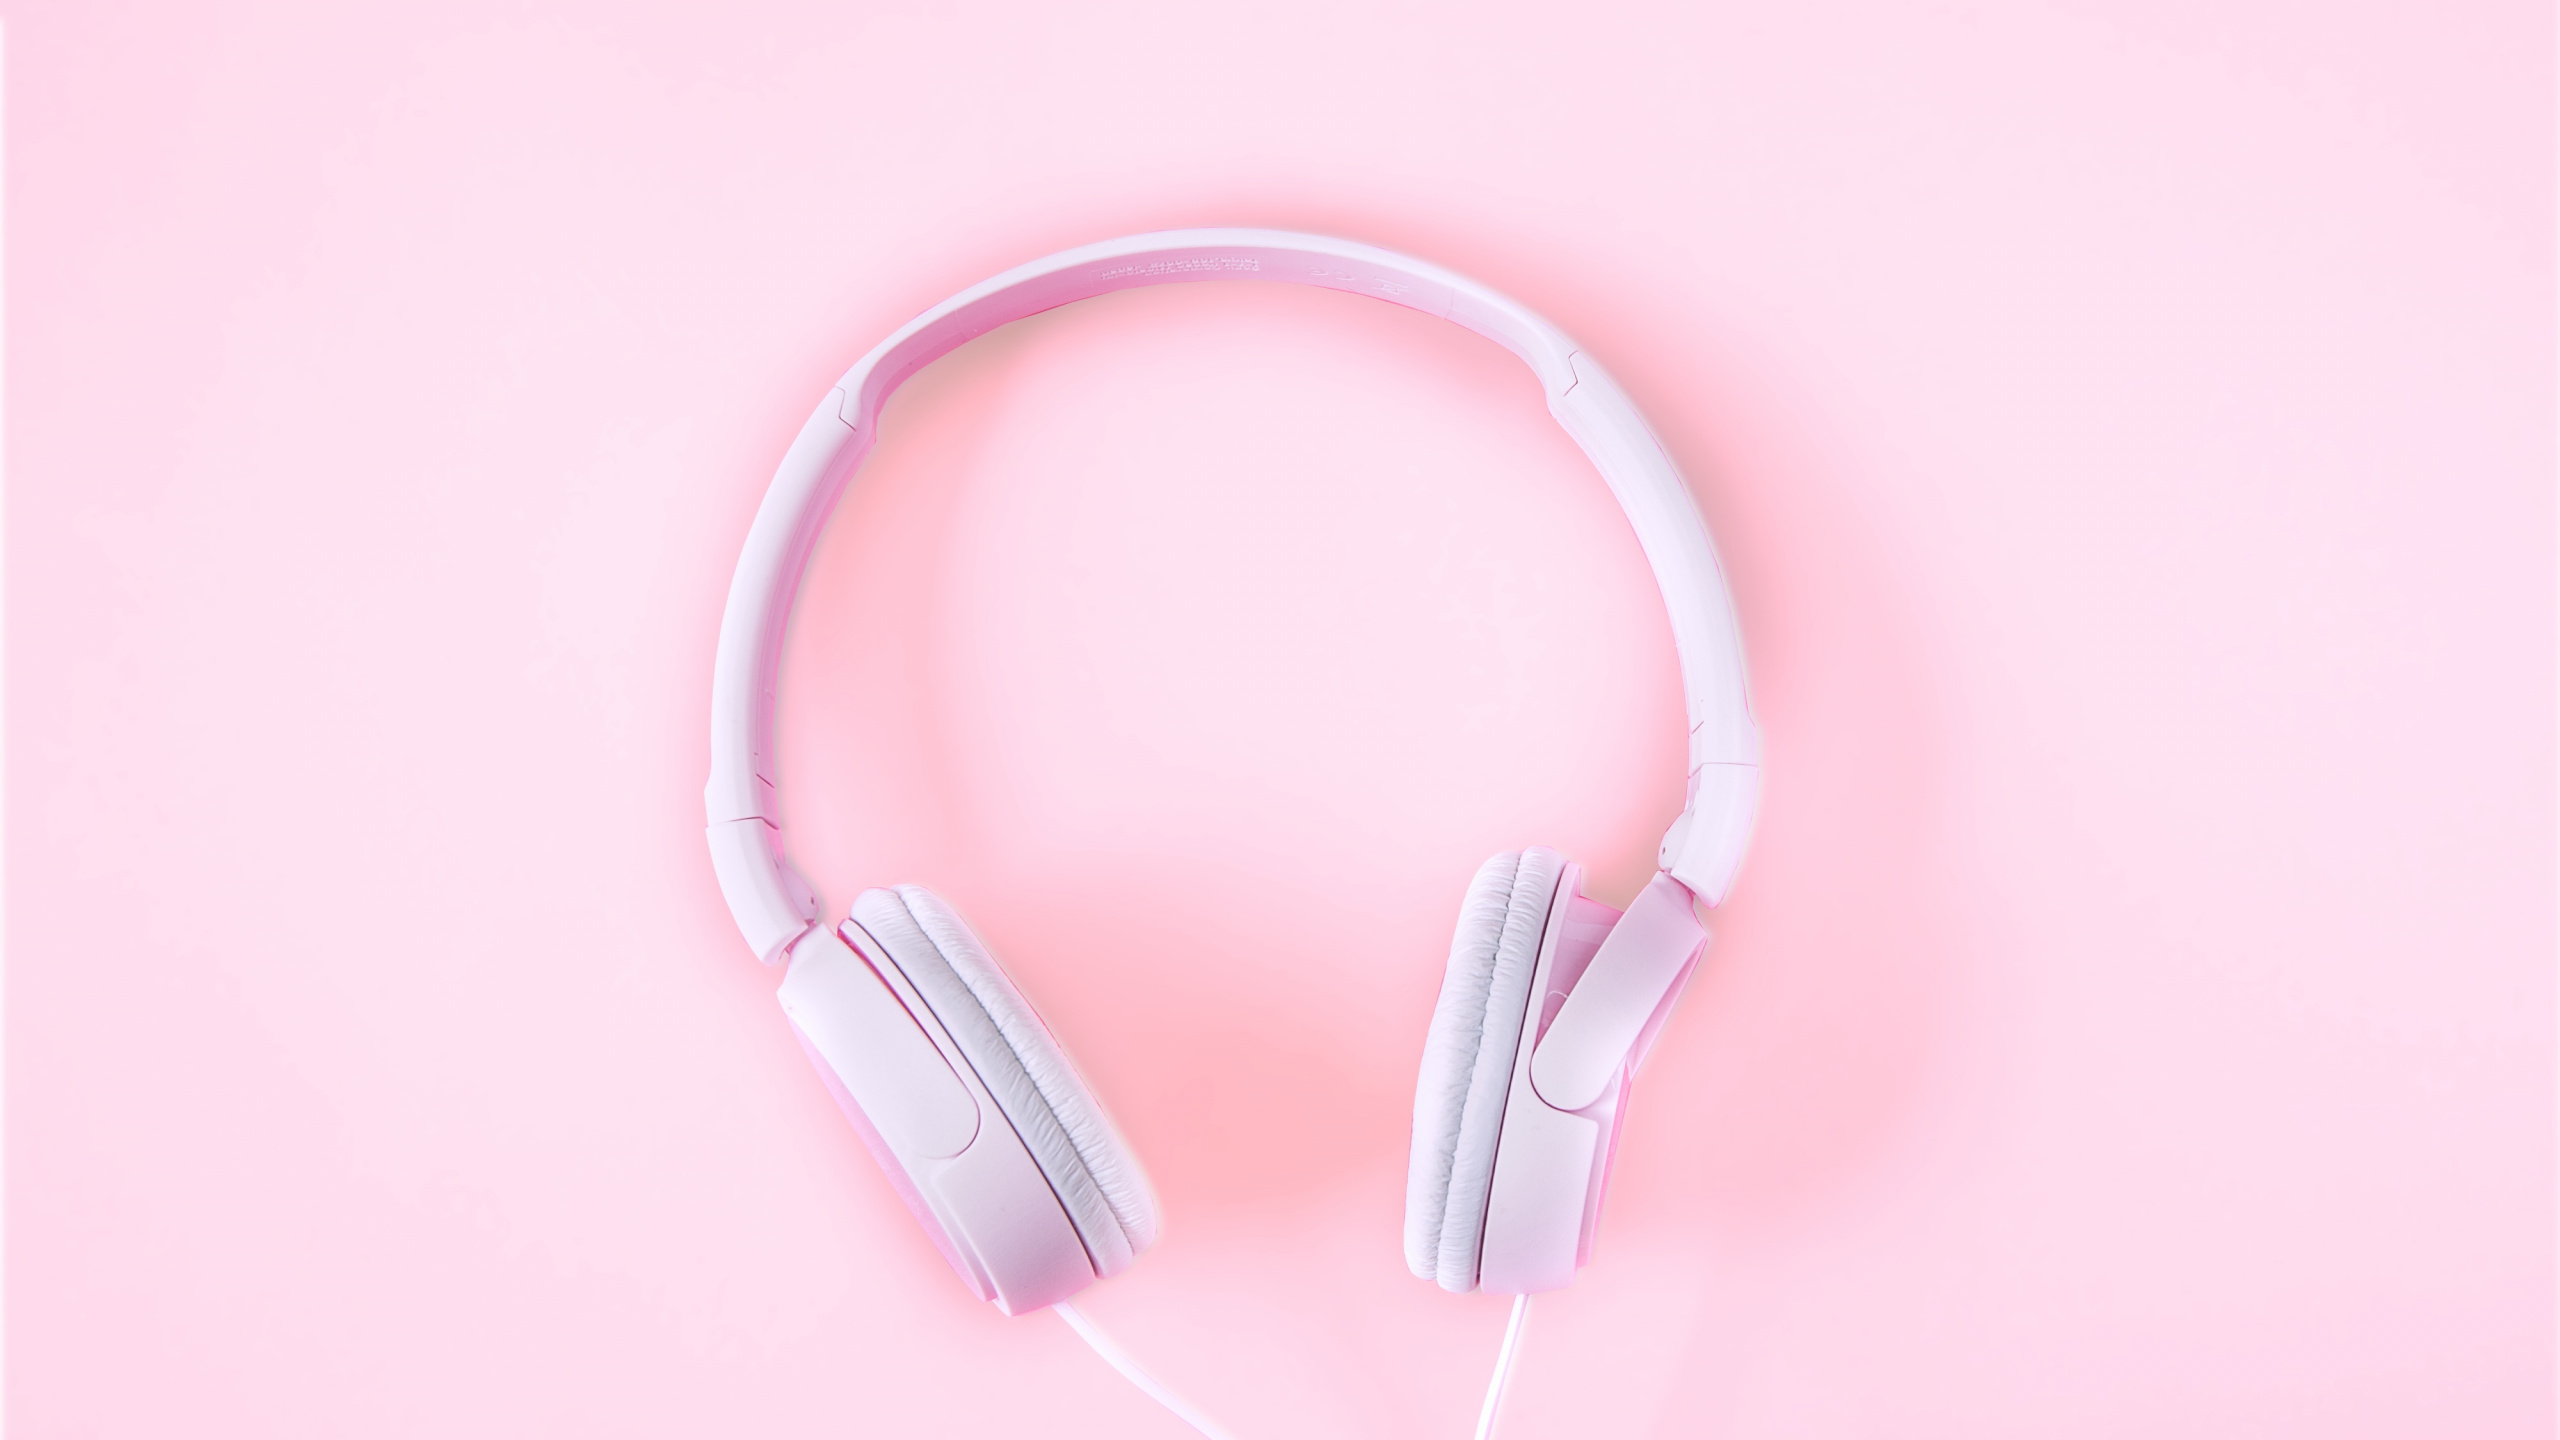 Headphones, Pink, Audio Equipment, Gadget, Ear. Wallpaper in 2560x1440 Resolution